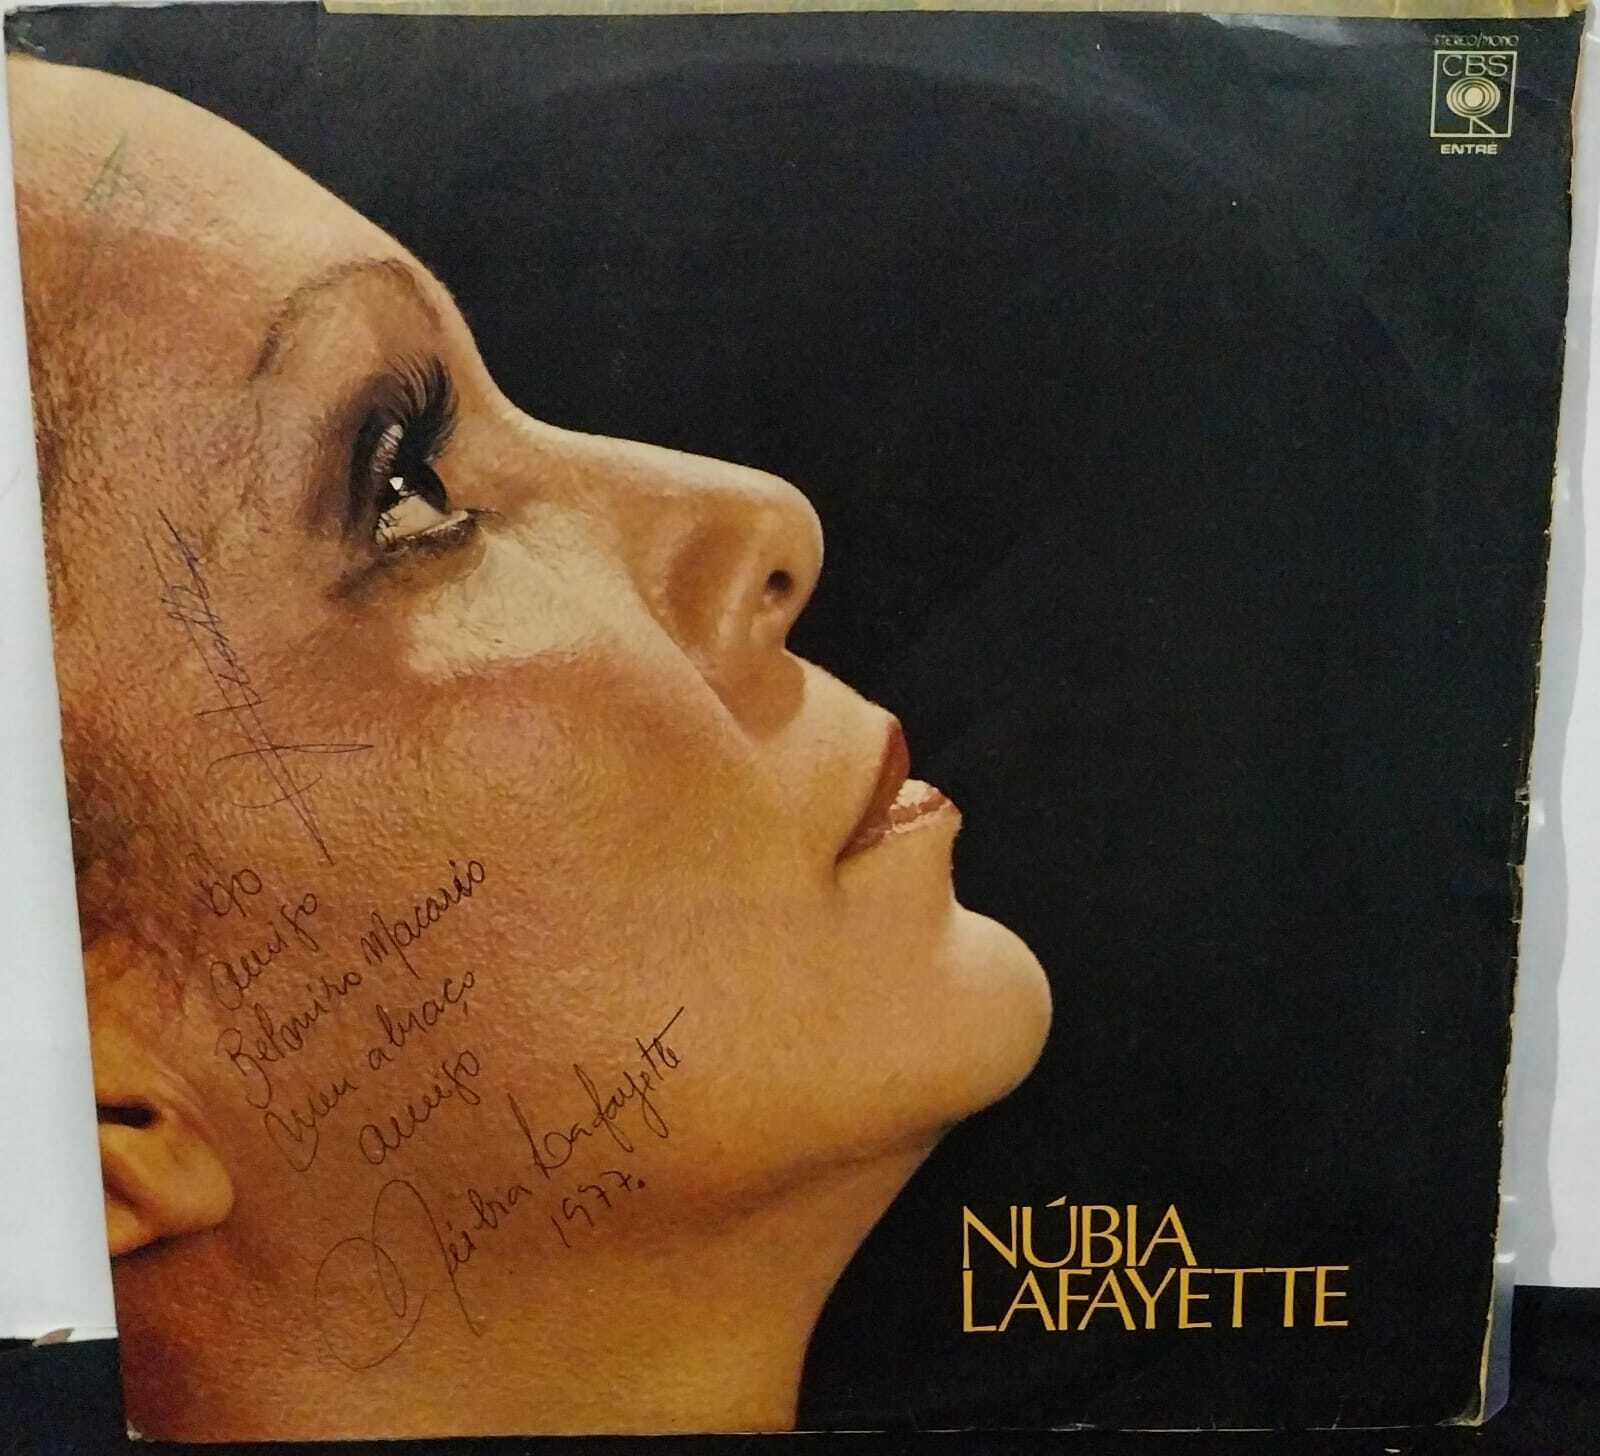 Vinil - Nubia Lafayette - 1977 (Autografado)